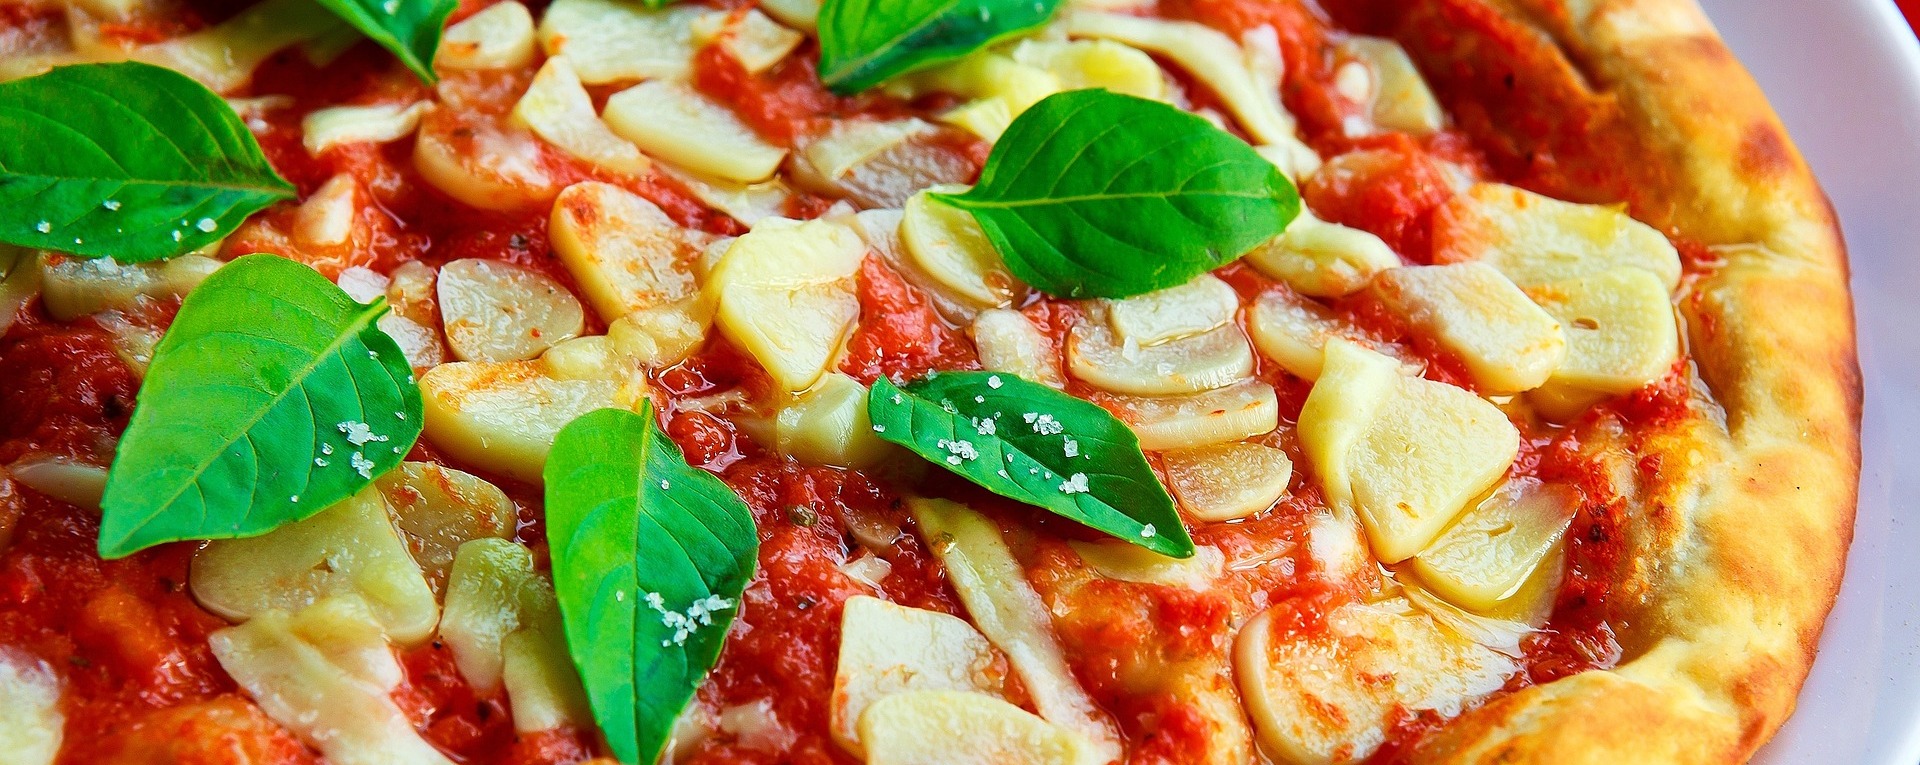 Wie viele Kalorien hat eine Pizza